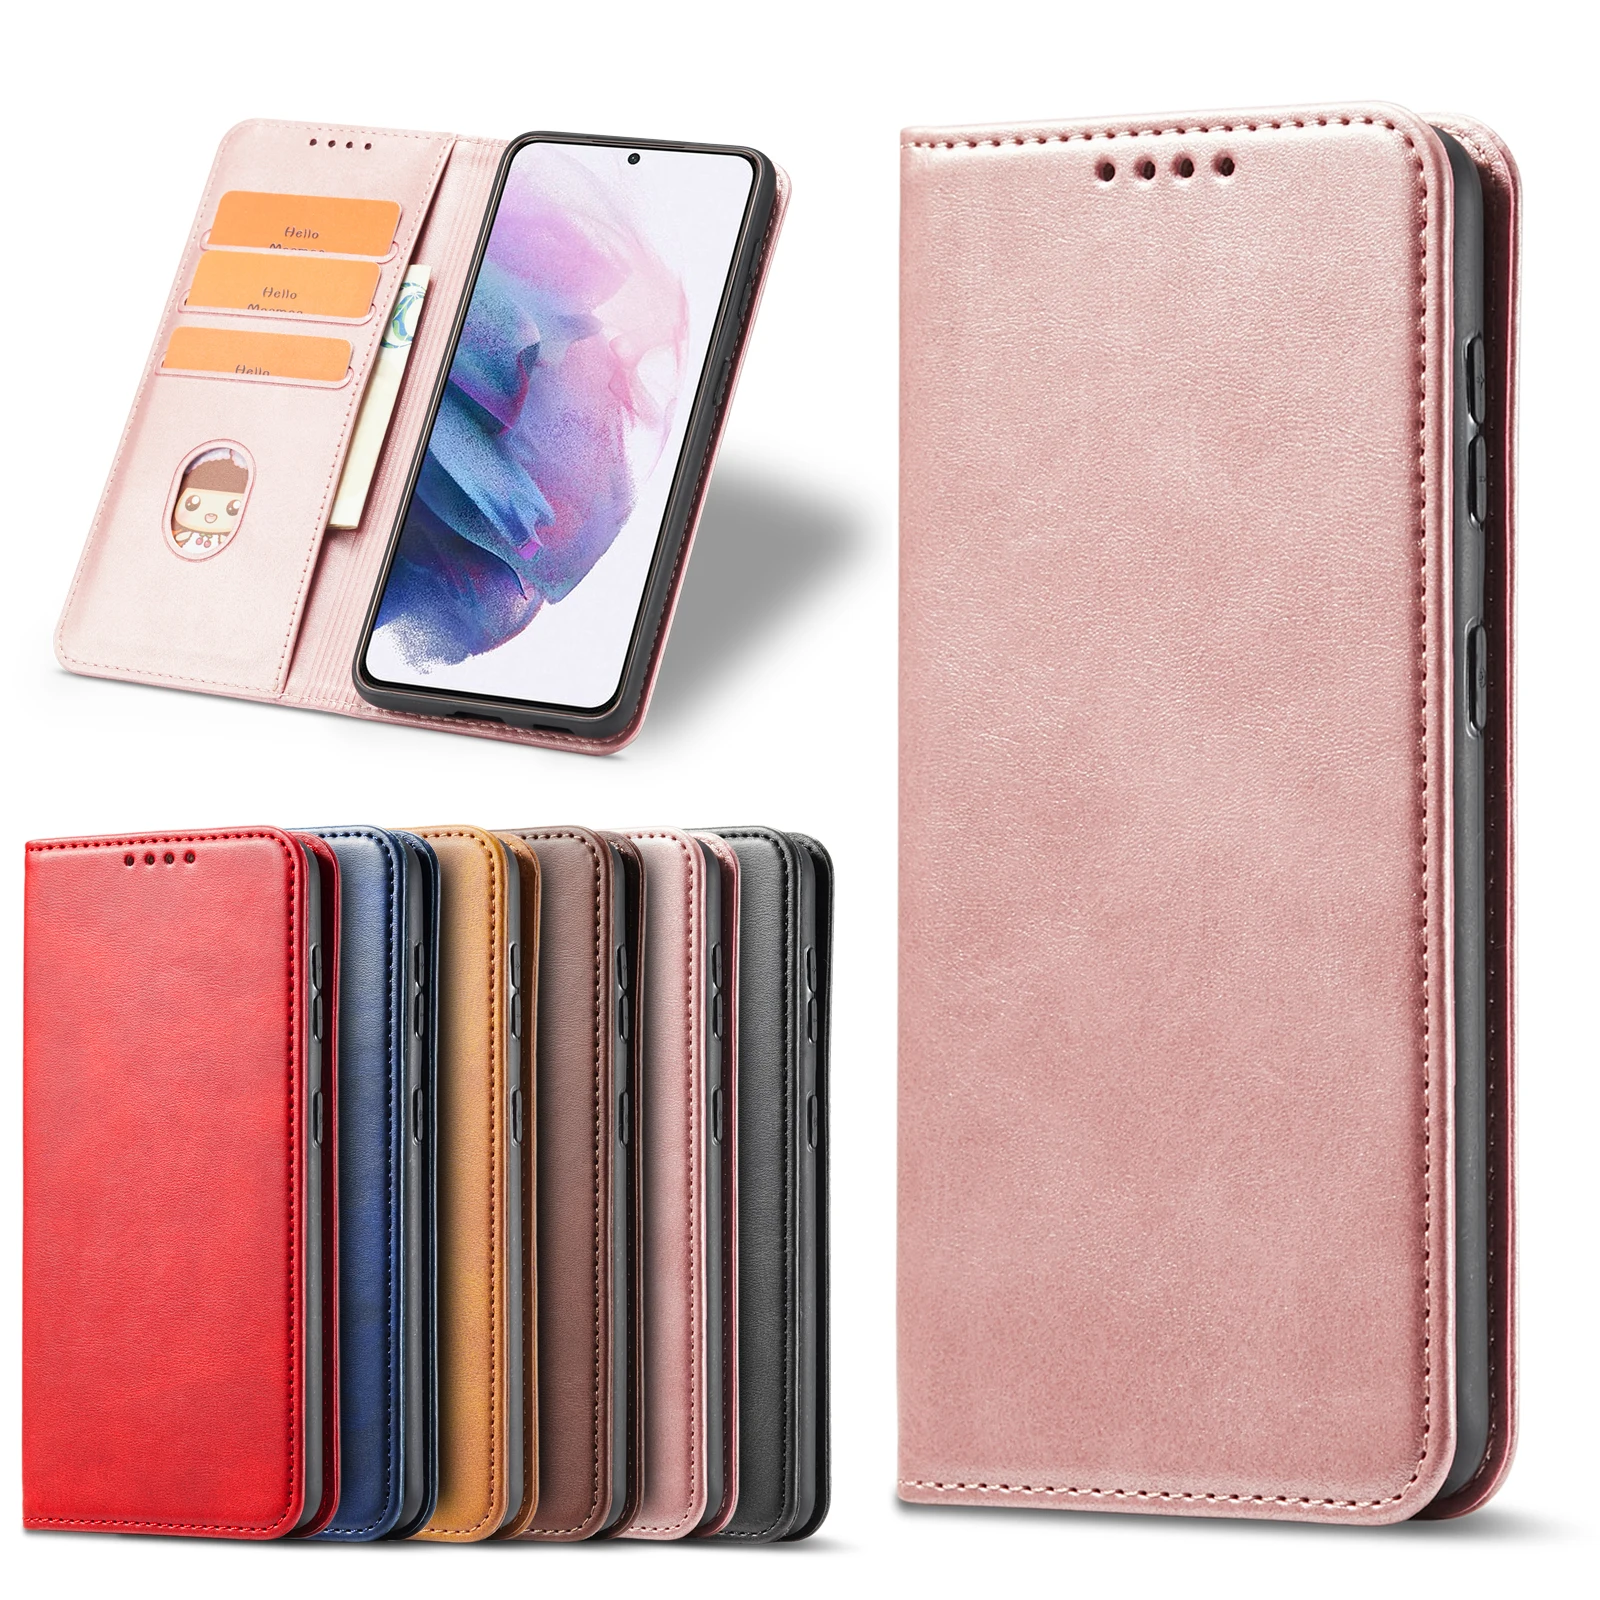 

Flip Phone Case For Samsung Galaxy A32 A22 A82 A72 A52 A12 M12 A42 A71 A51 A11 A21S A20S A10S A41 A01 A31 A90 Wallet Cover Coque